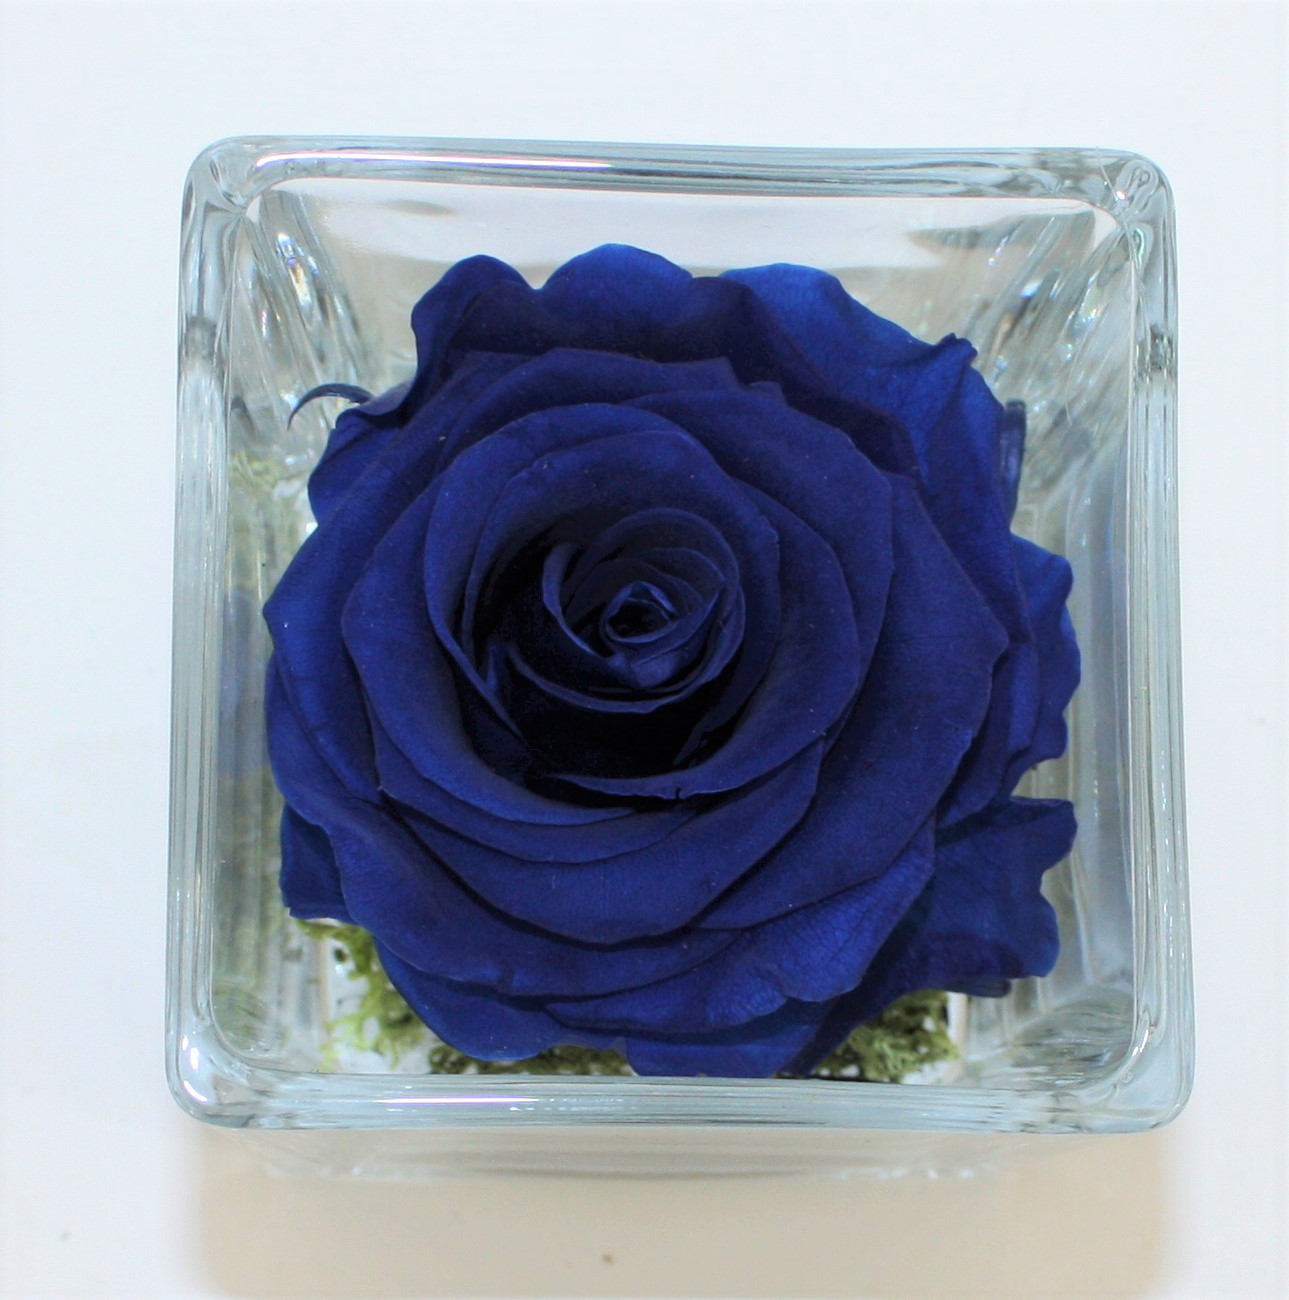 Regalare una rosa blu: significato e occasioni